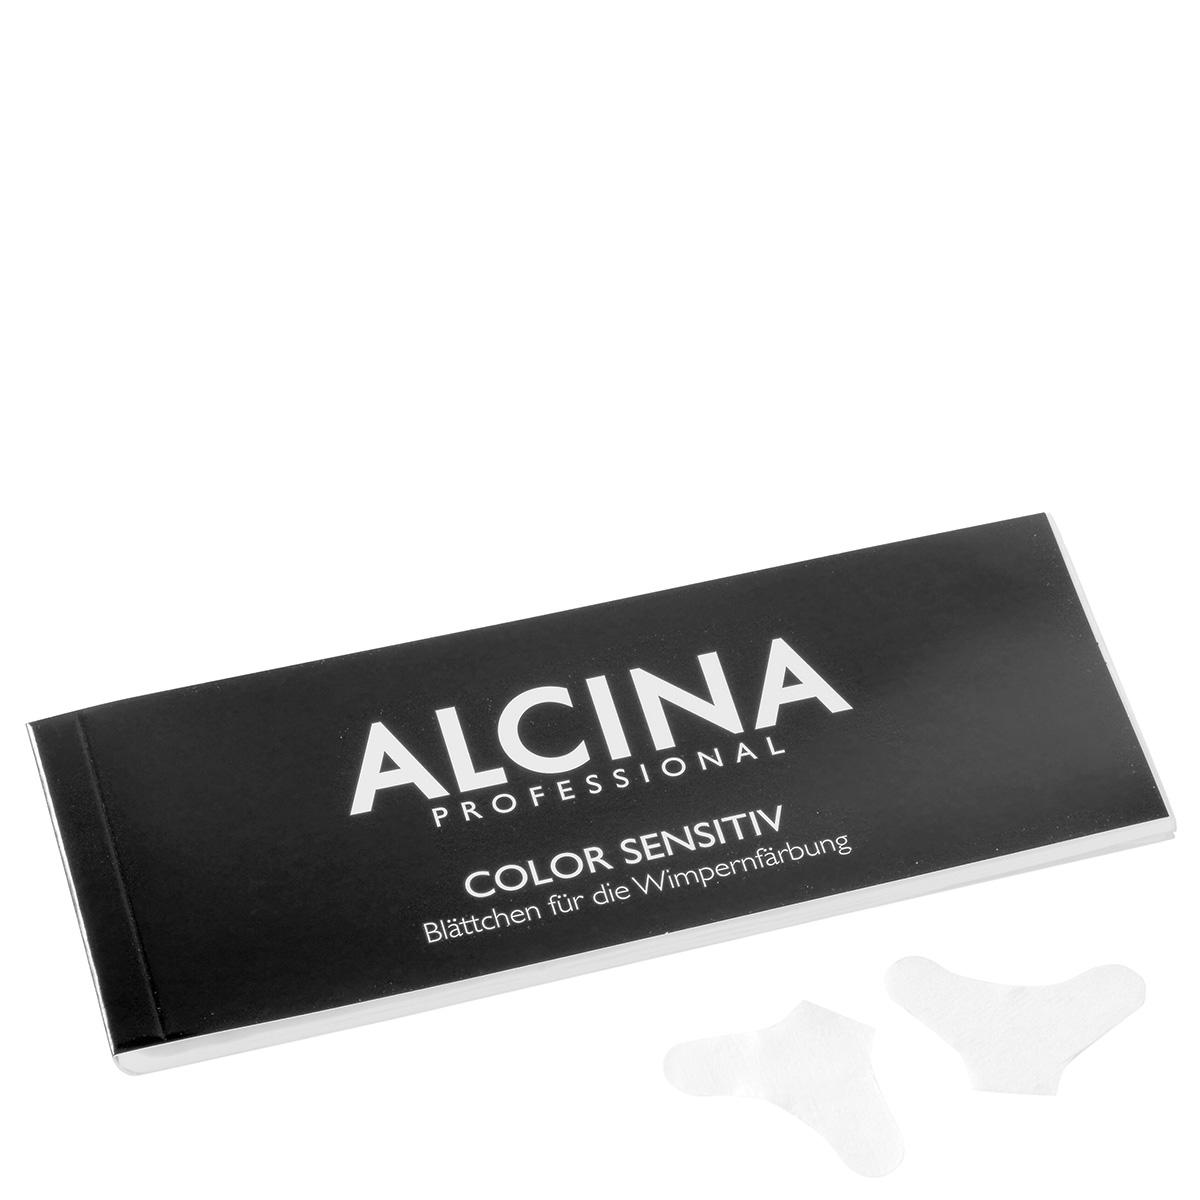 Alcina Lames de cils Color Sensitiv 1 Block 96 Blatt - 1